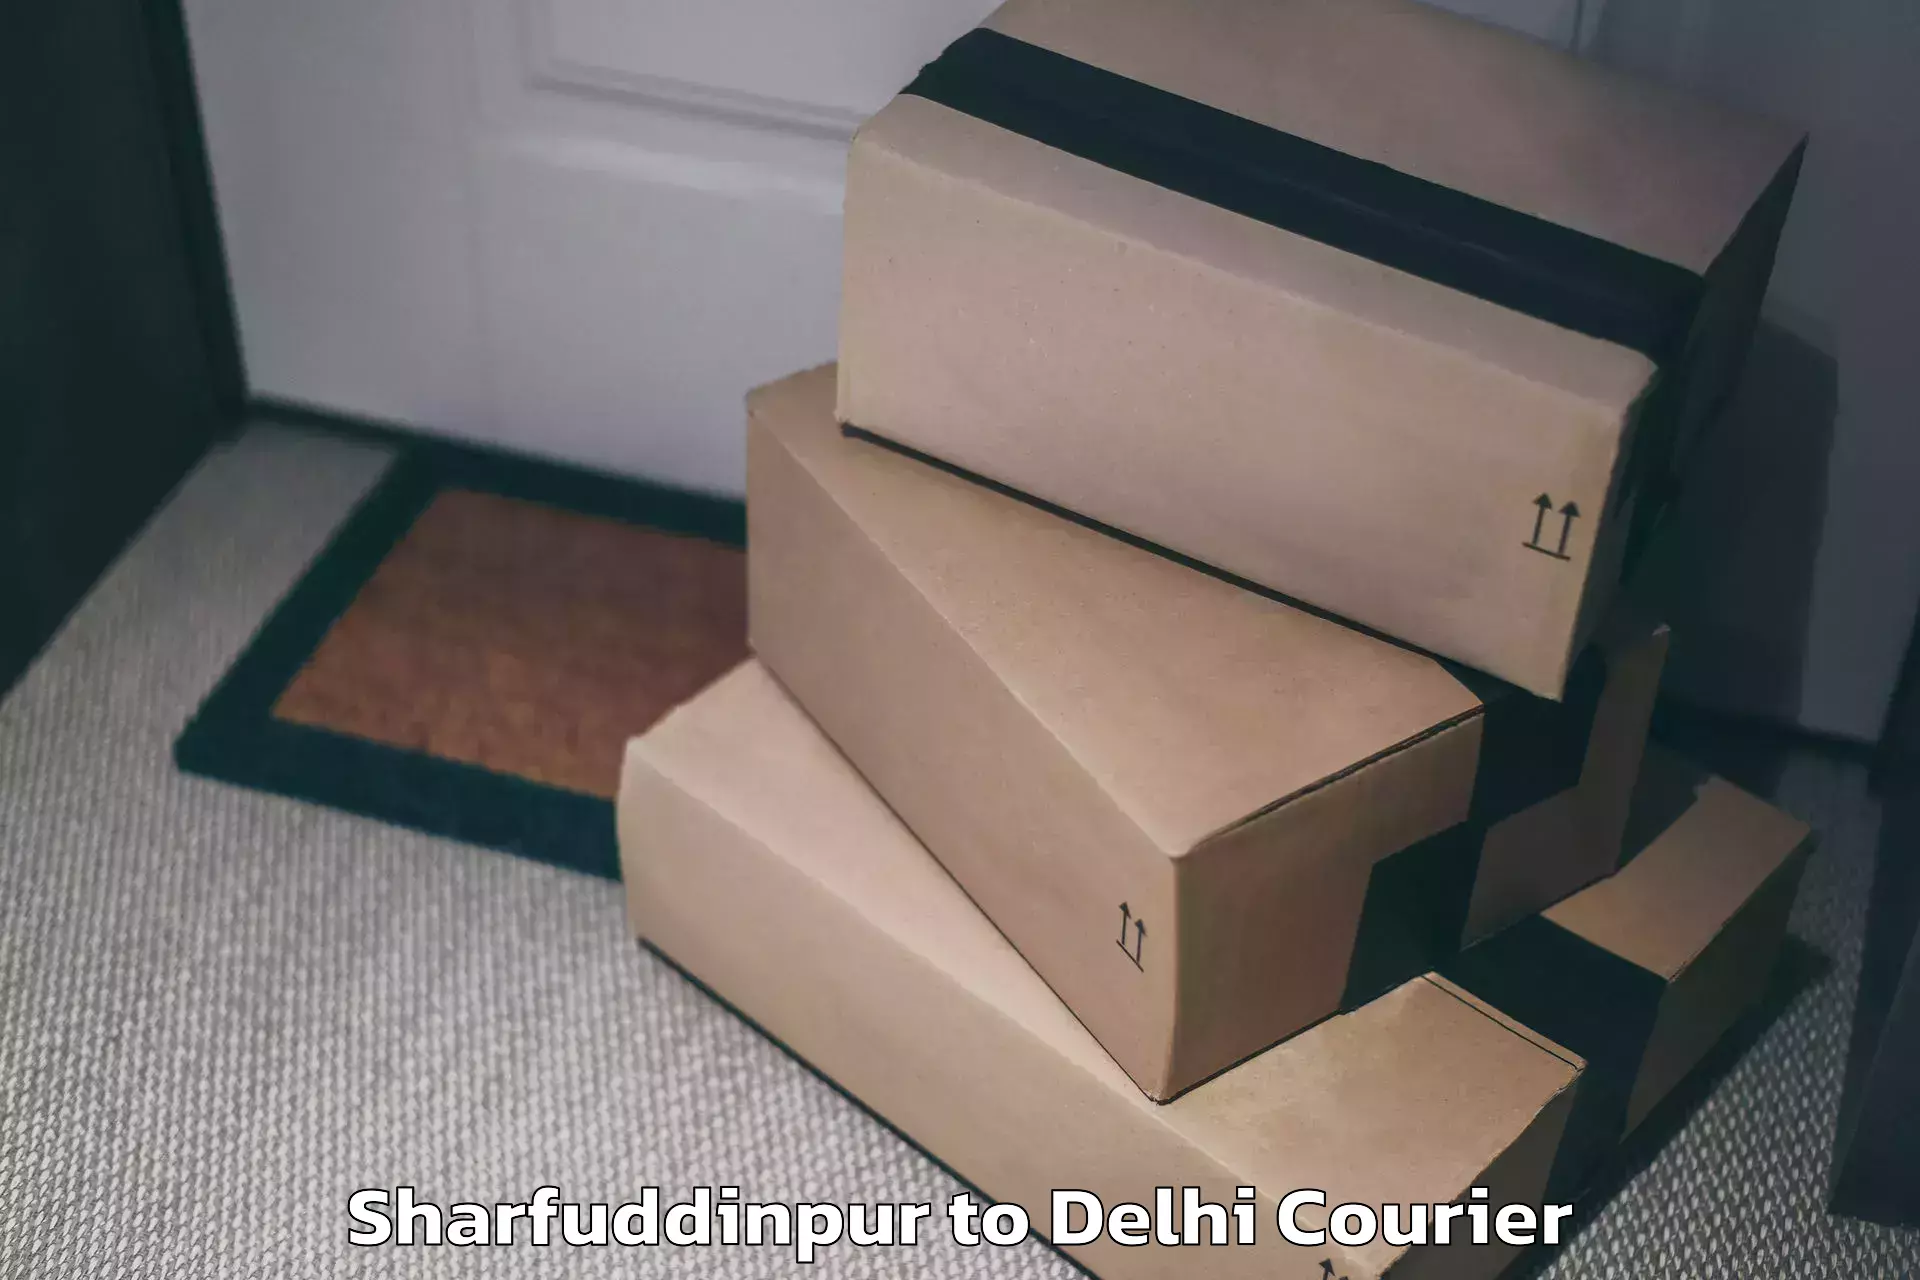 High-quality baggage shipment Sharfuddinpur to Sarojini Nagar